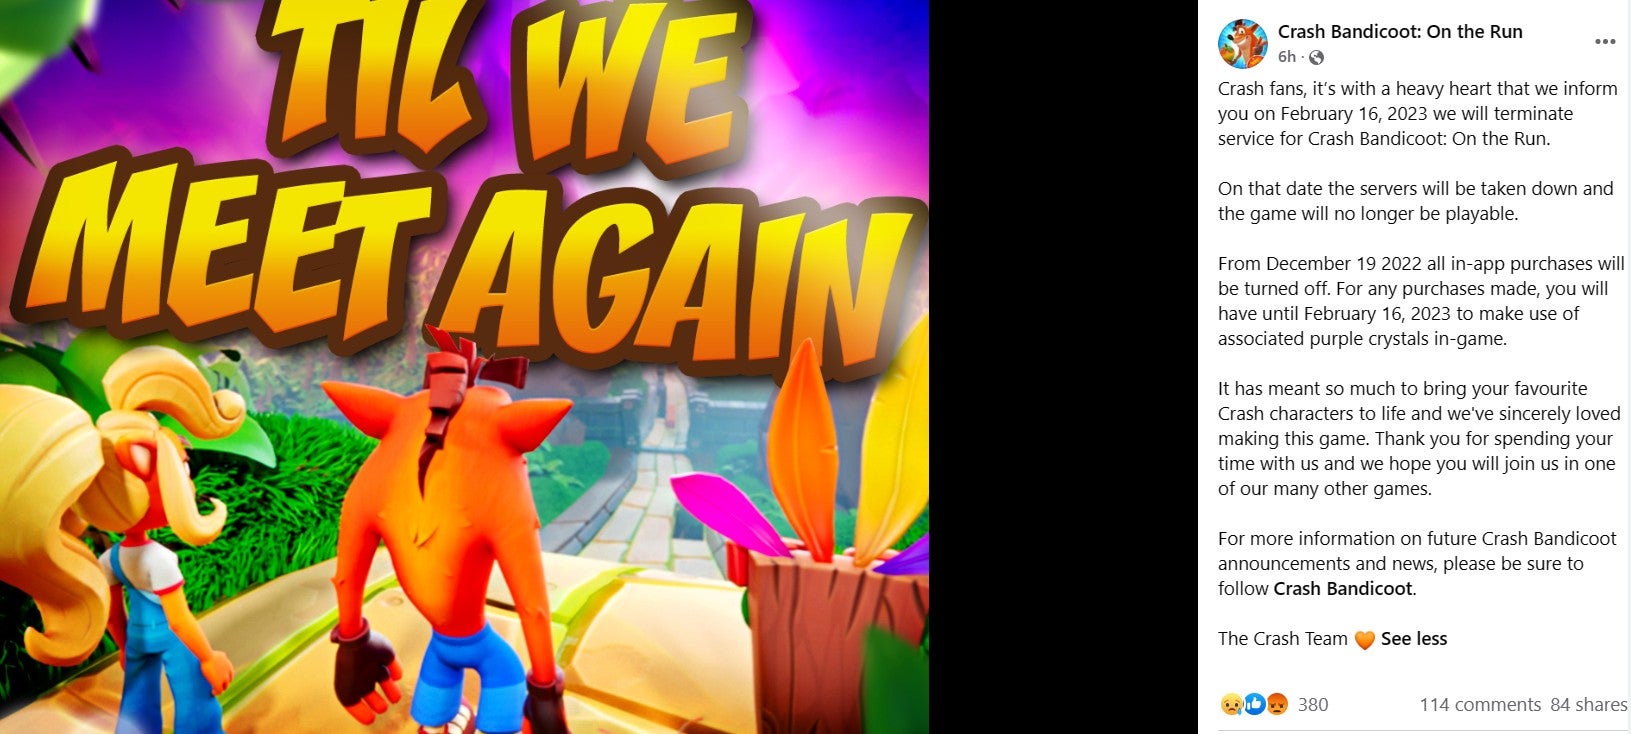 Game seluler Crash Bandicoot ditutup setelah kurang dari dua tahun